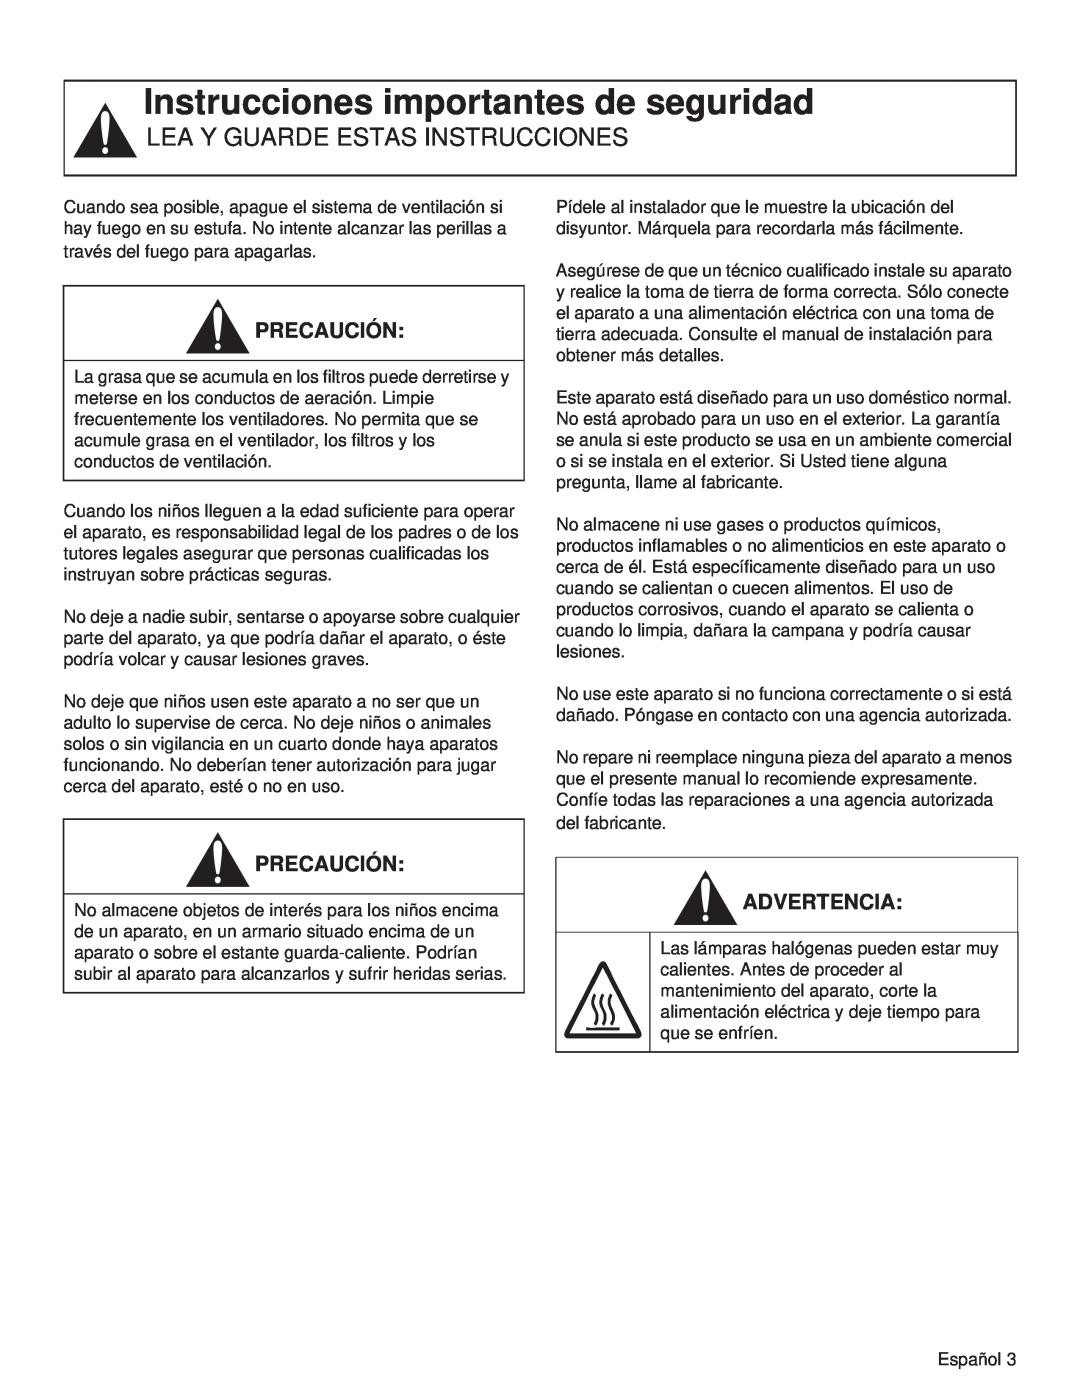 Thermador VCIN48JP manual Instrucciones importantes de seguridad, Lea Y Guarde Estas Instrucciones, Precaución, Advertencia 